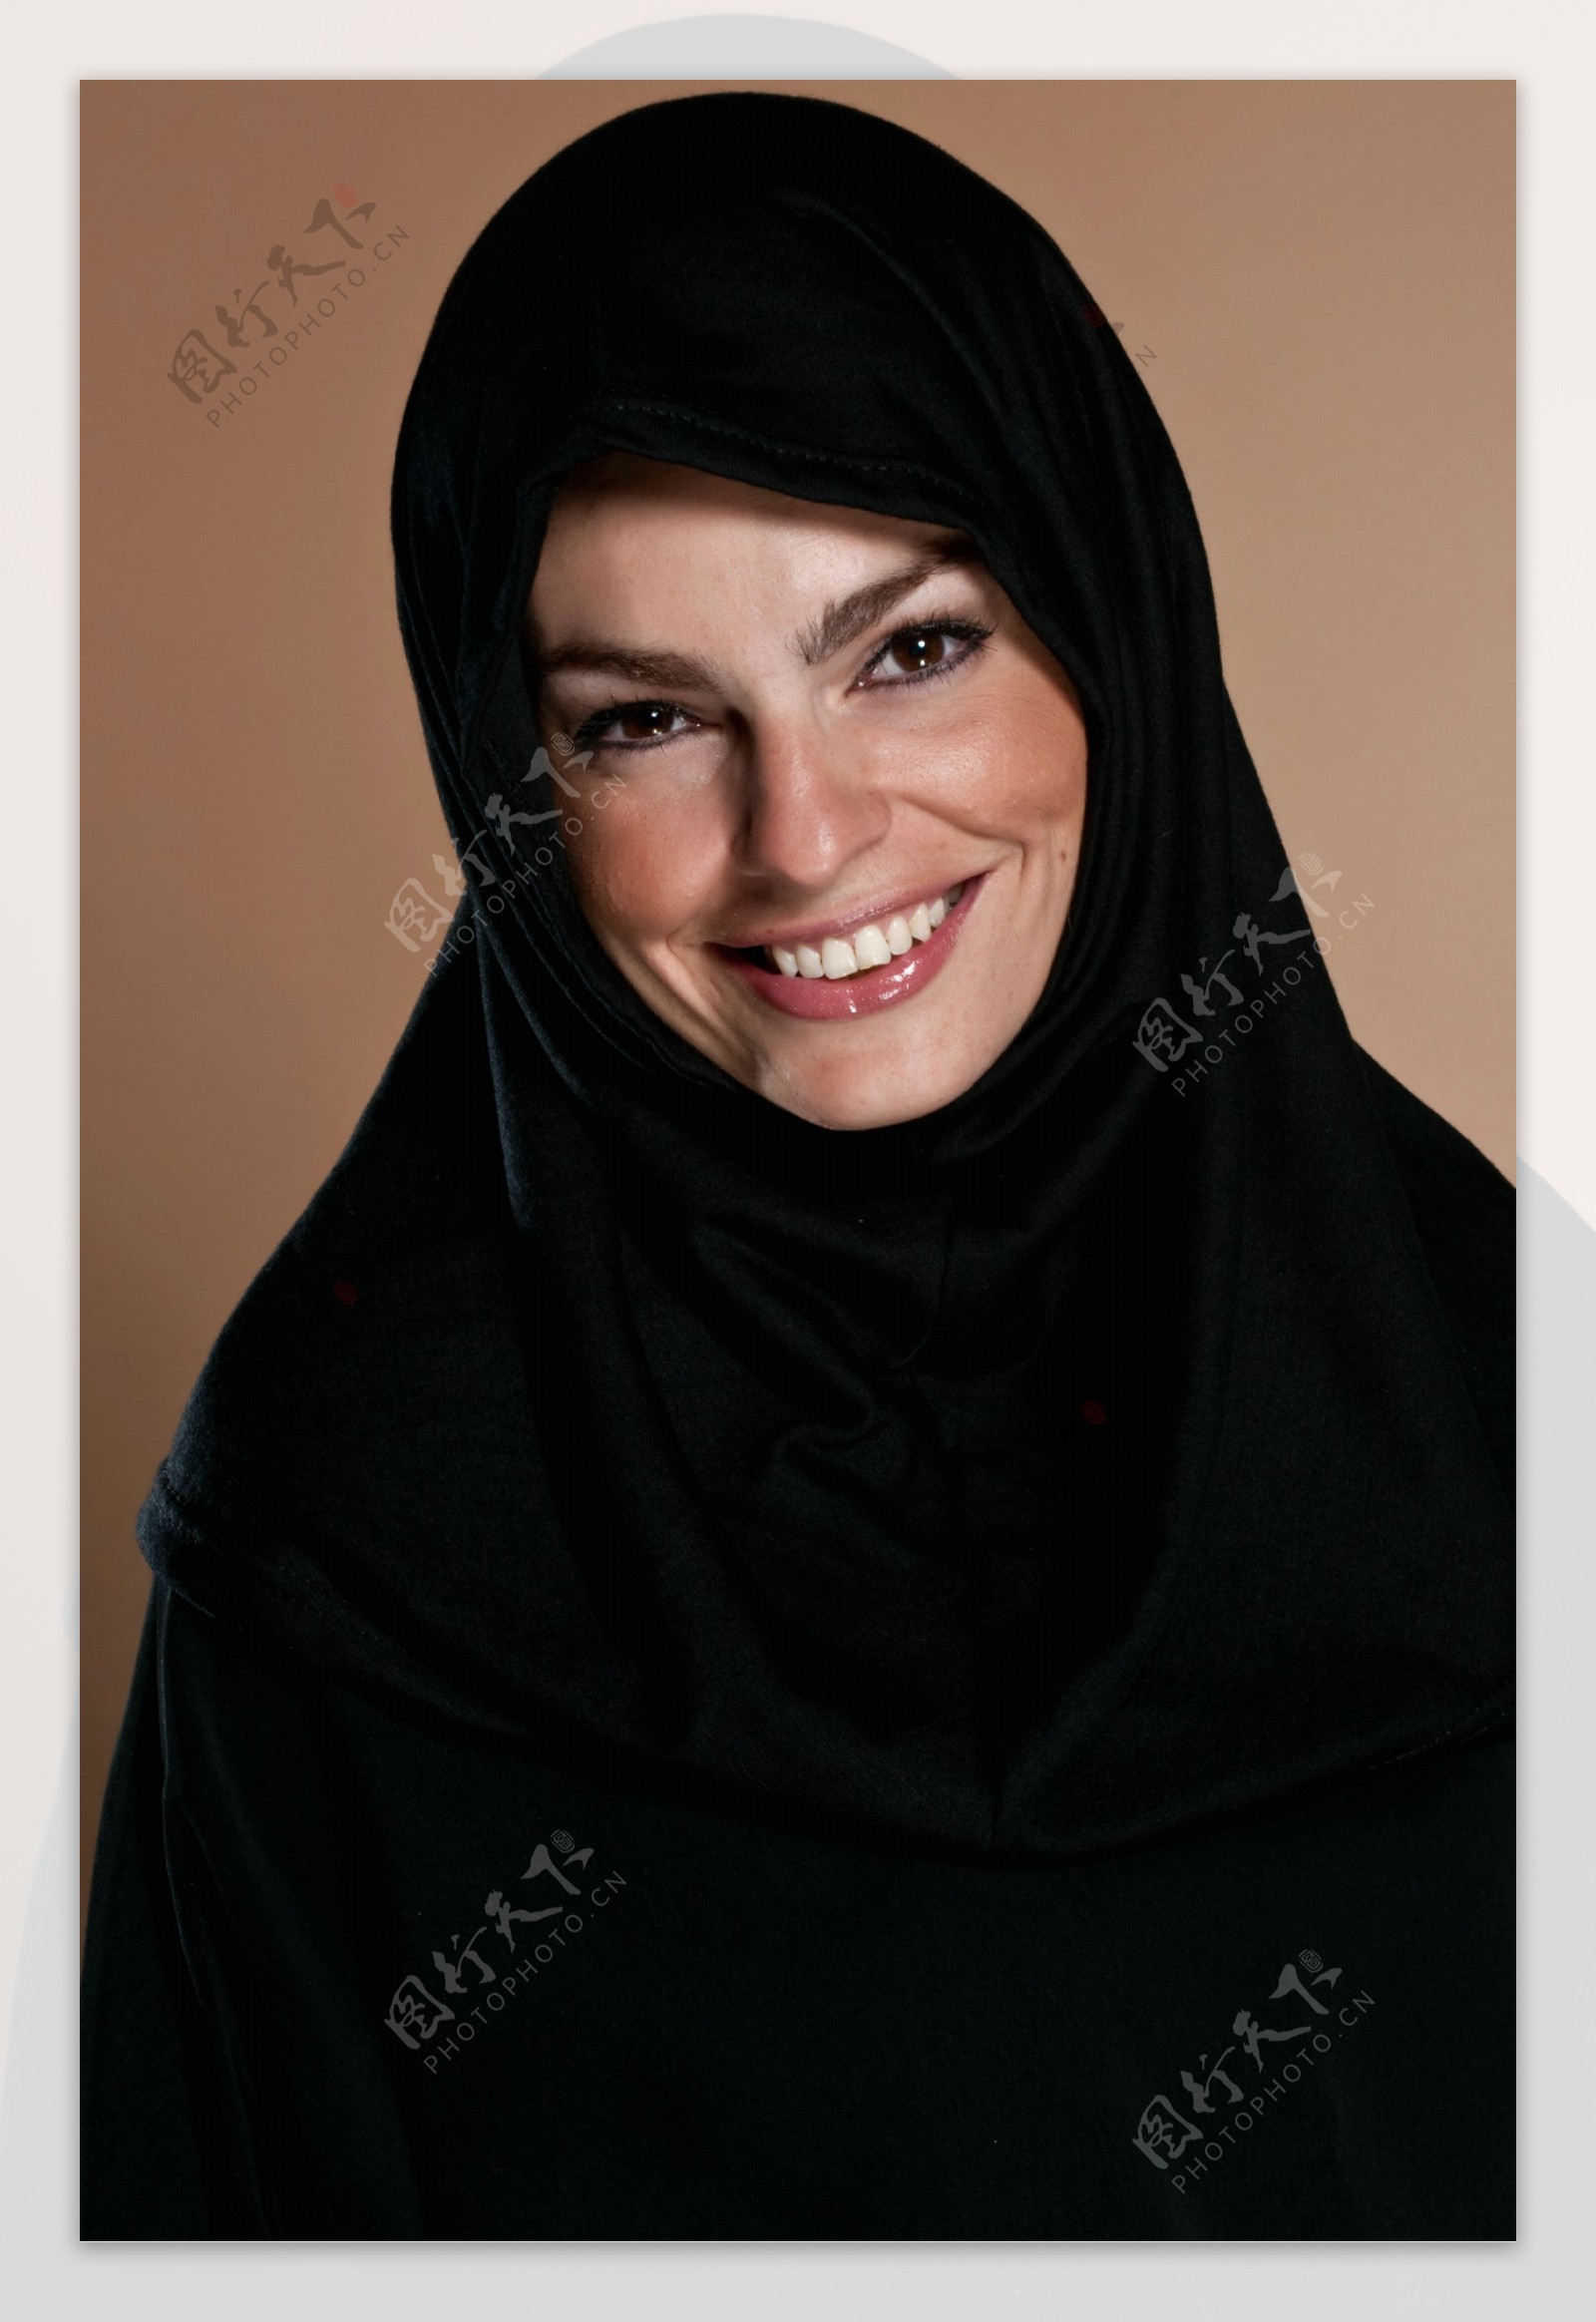 微笑的伊斯兰教图片